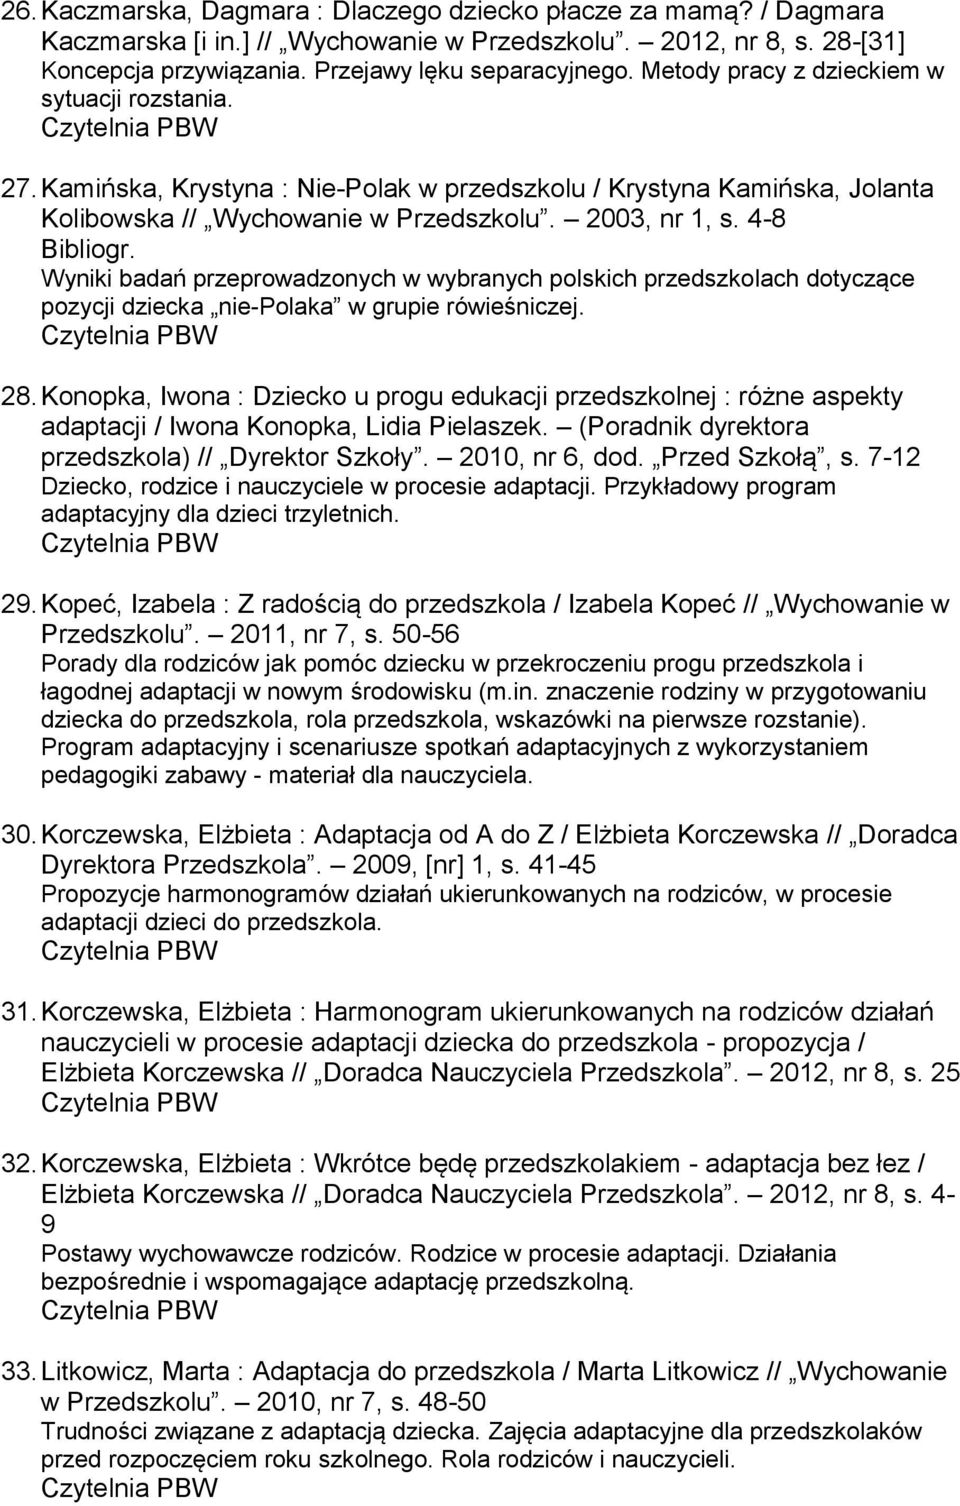 Wyniki badań przeprowadzonych w wybranych polskich przedszkolach dotyczące pozycji dziecka nie-polaka w grupie rówieśniczej. 28.